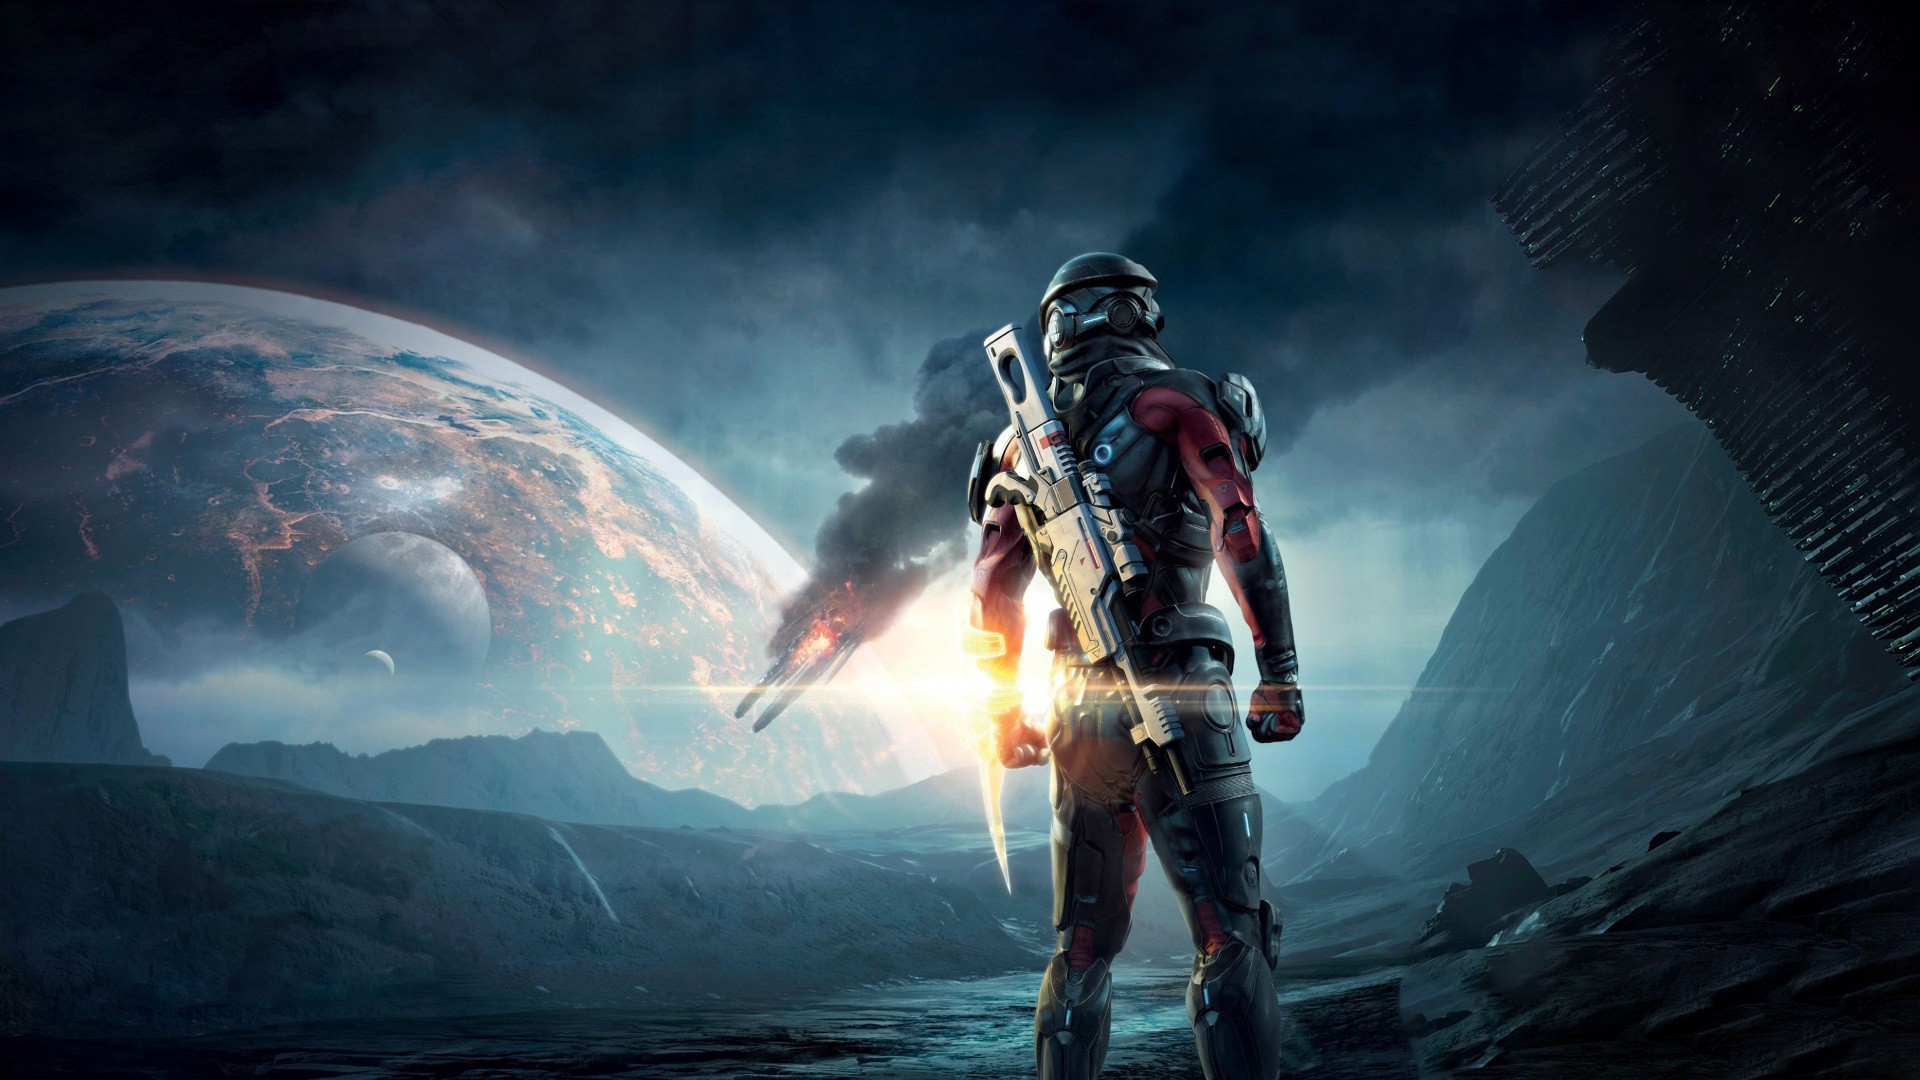 download the new version for mac Mass Effect™ издание Legendary